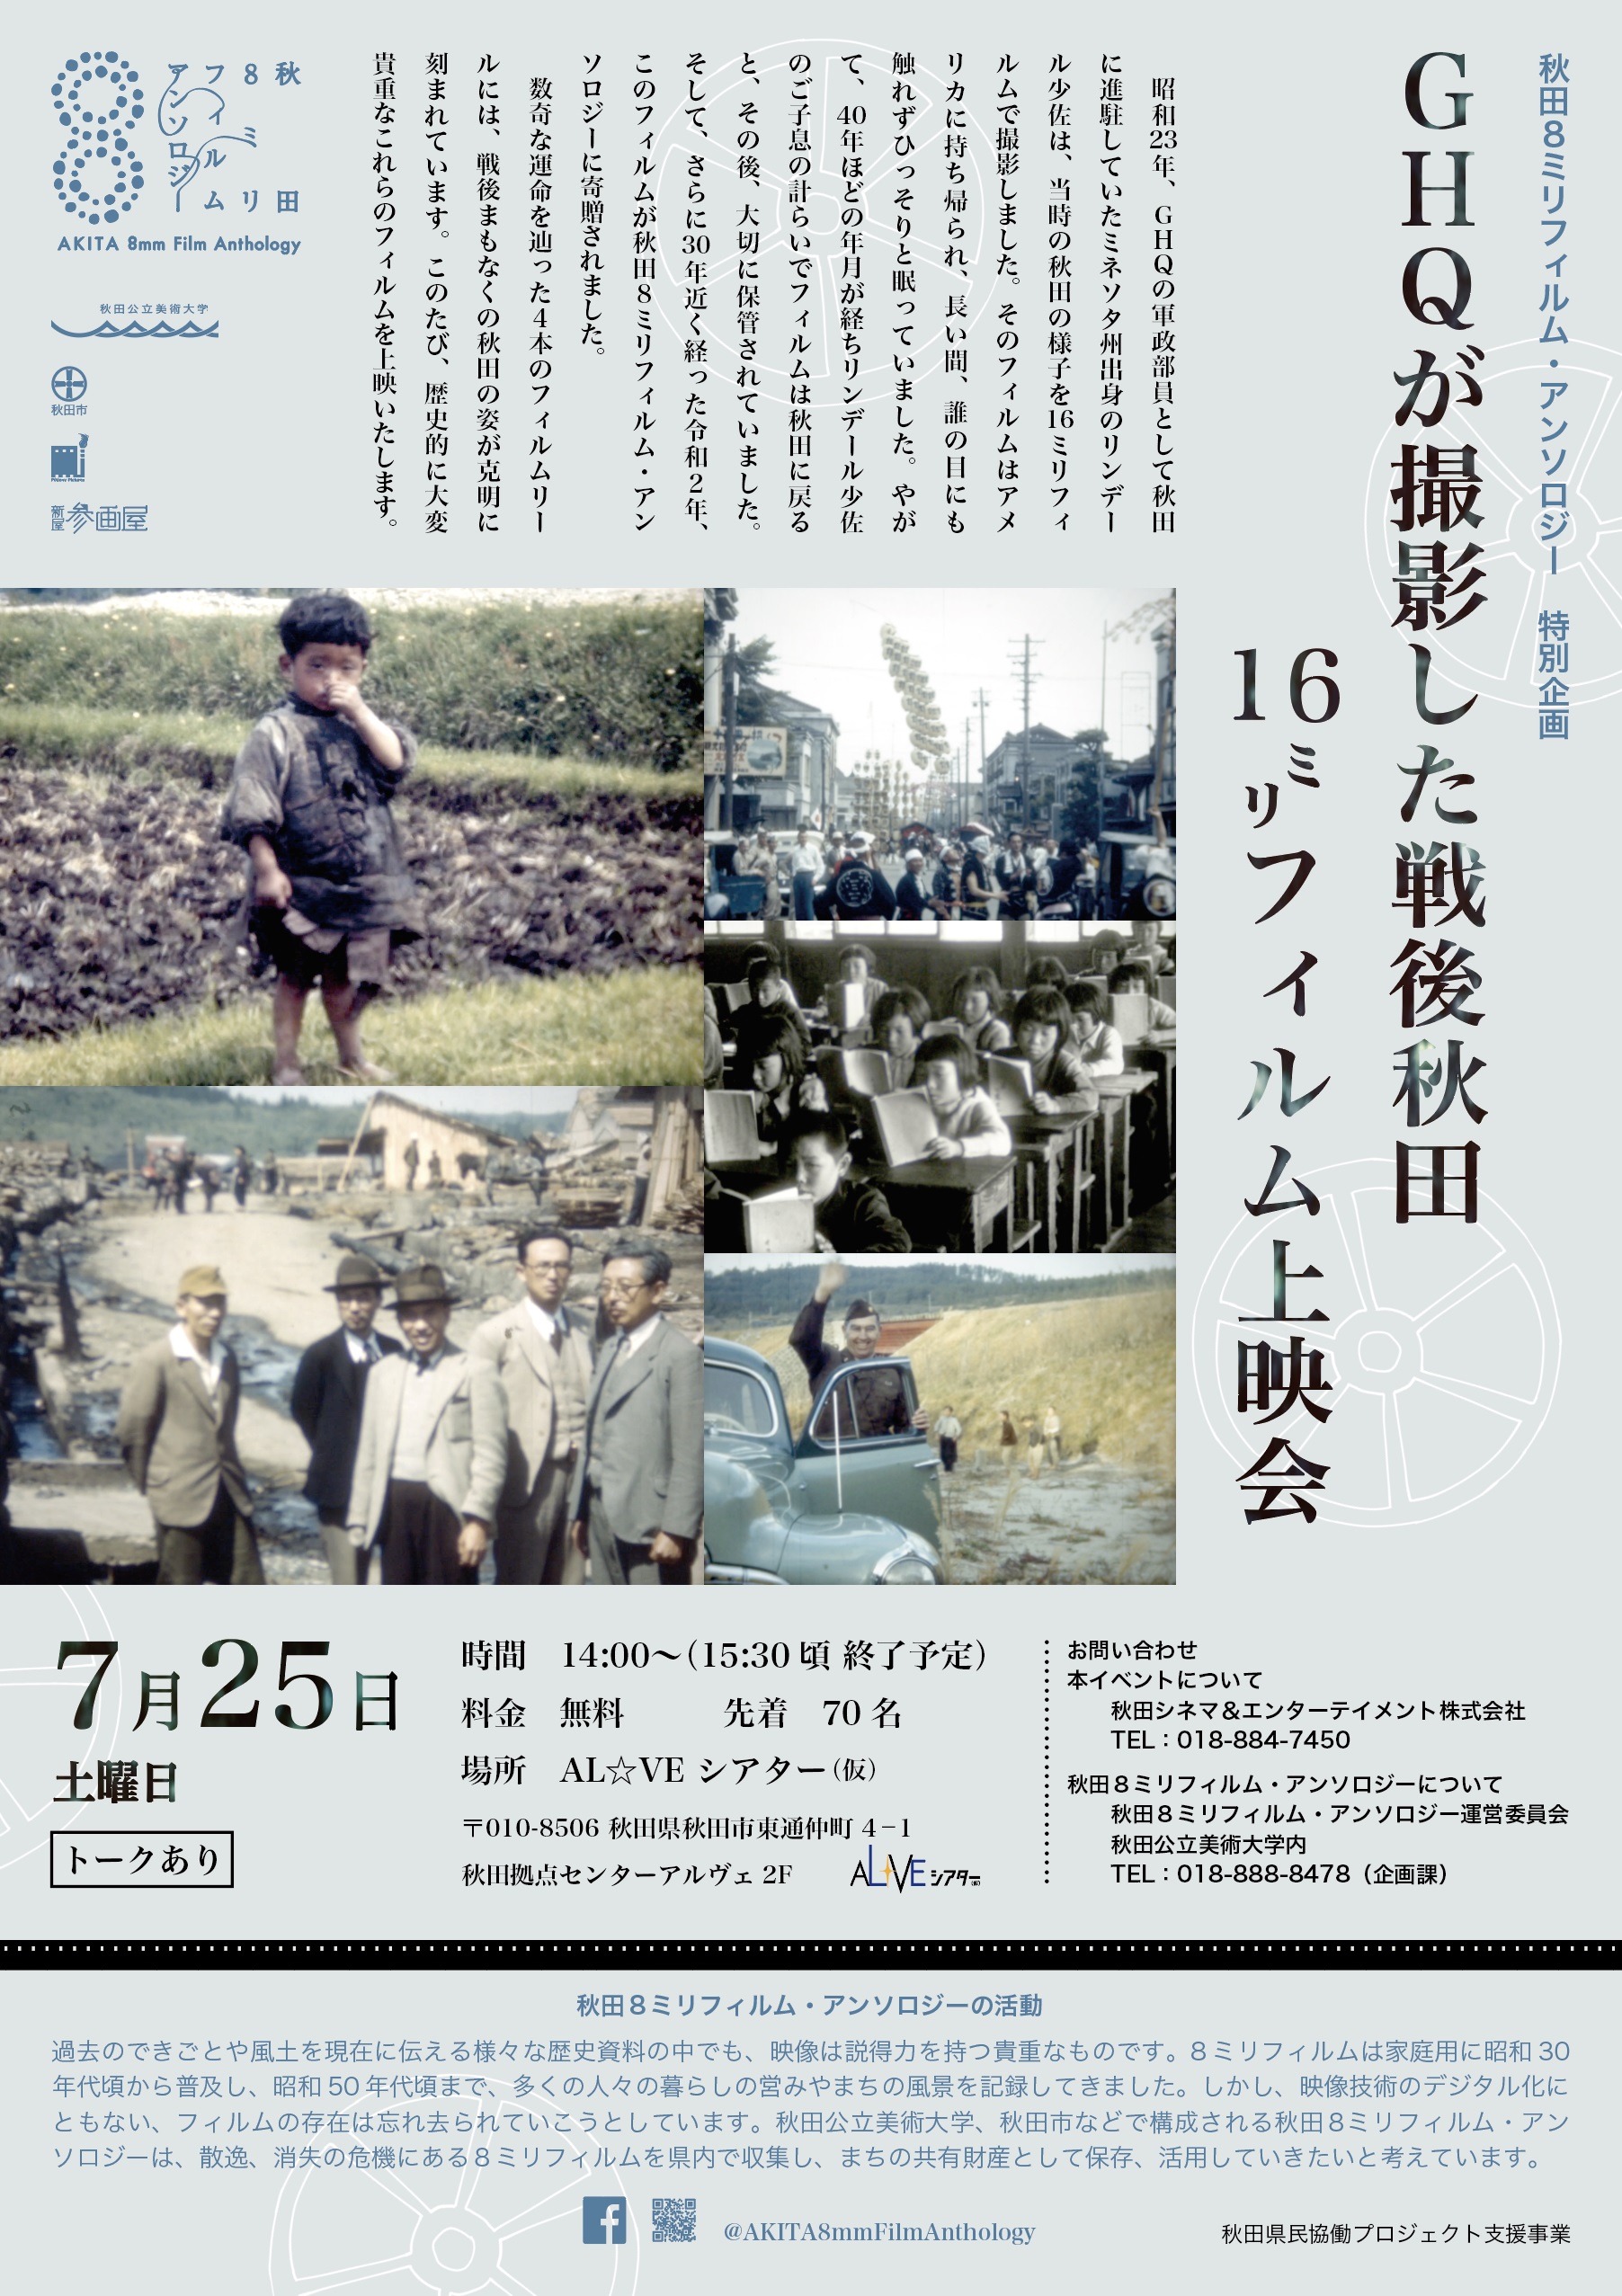 「GHQが撮影した戦後秋田　16ミリフィルム上映会」（7/25）